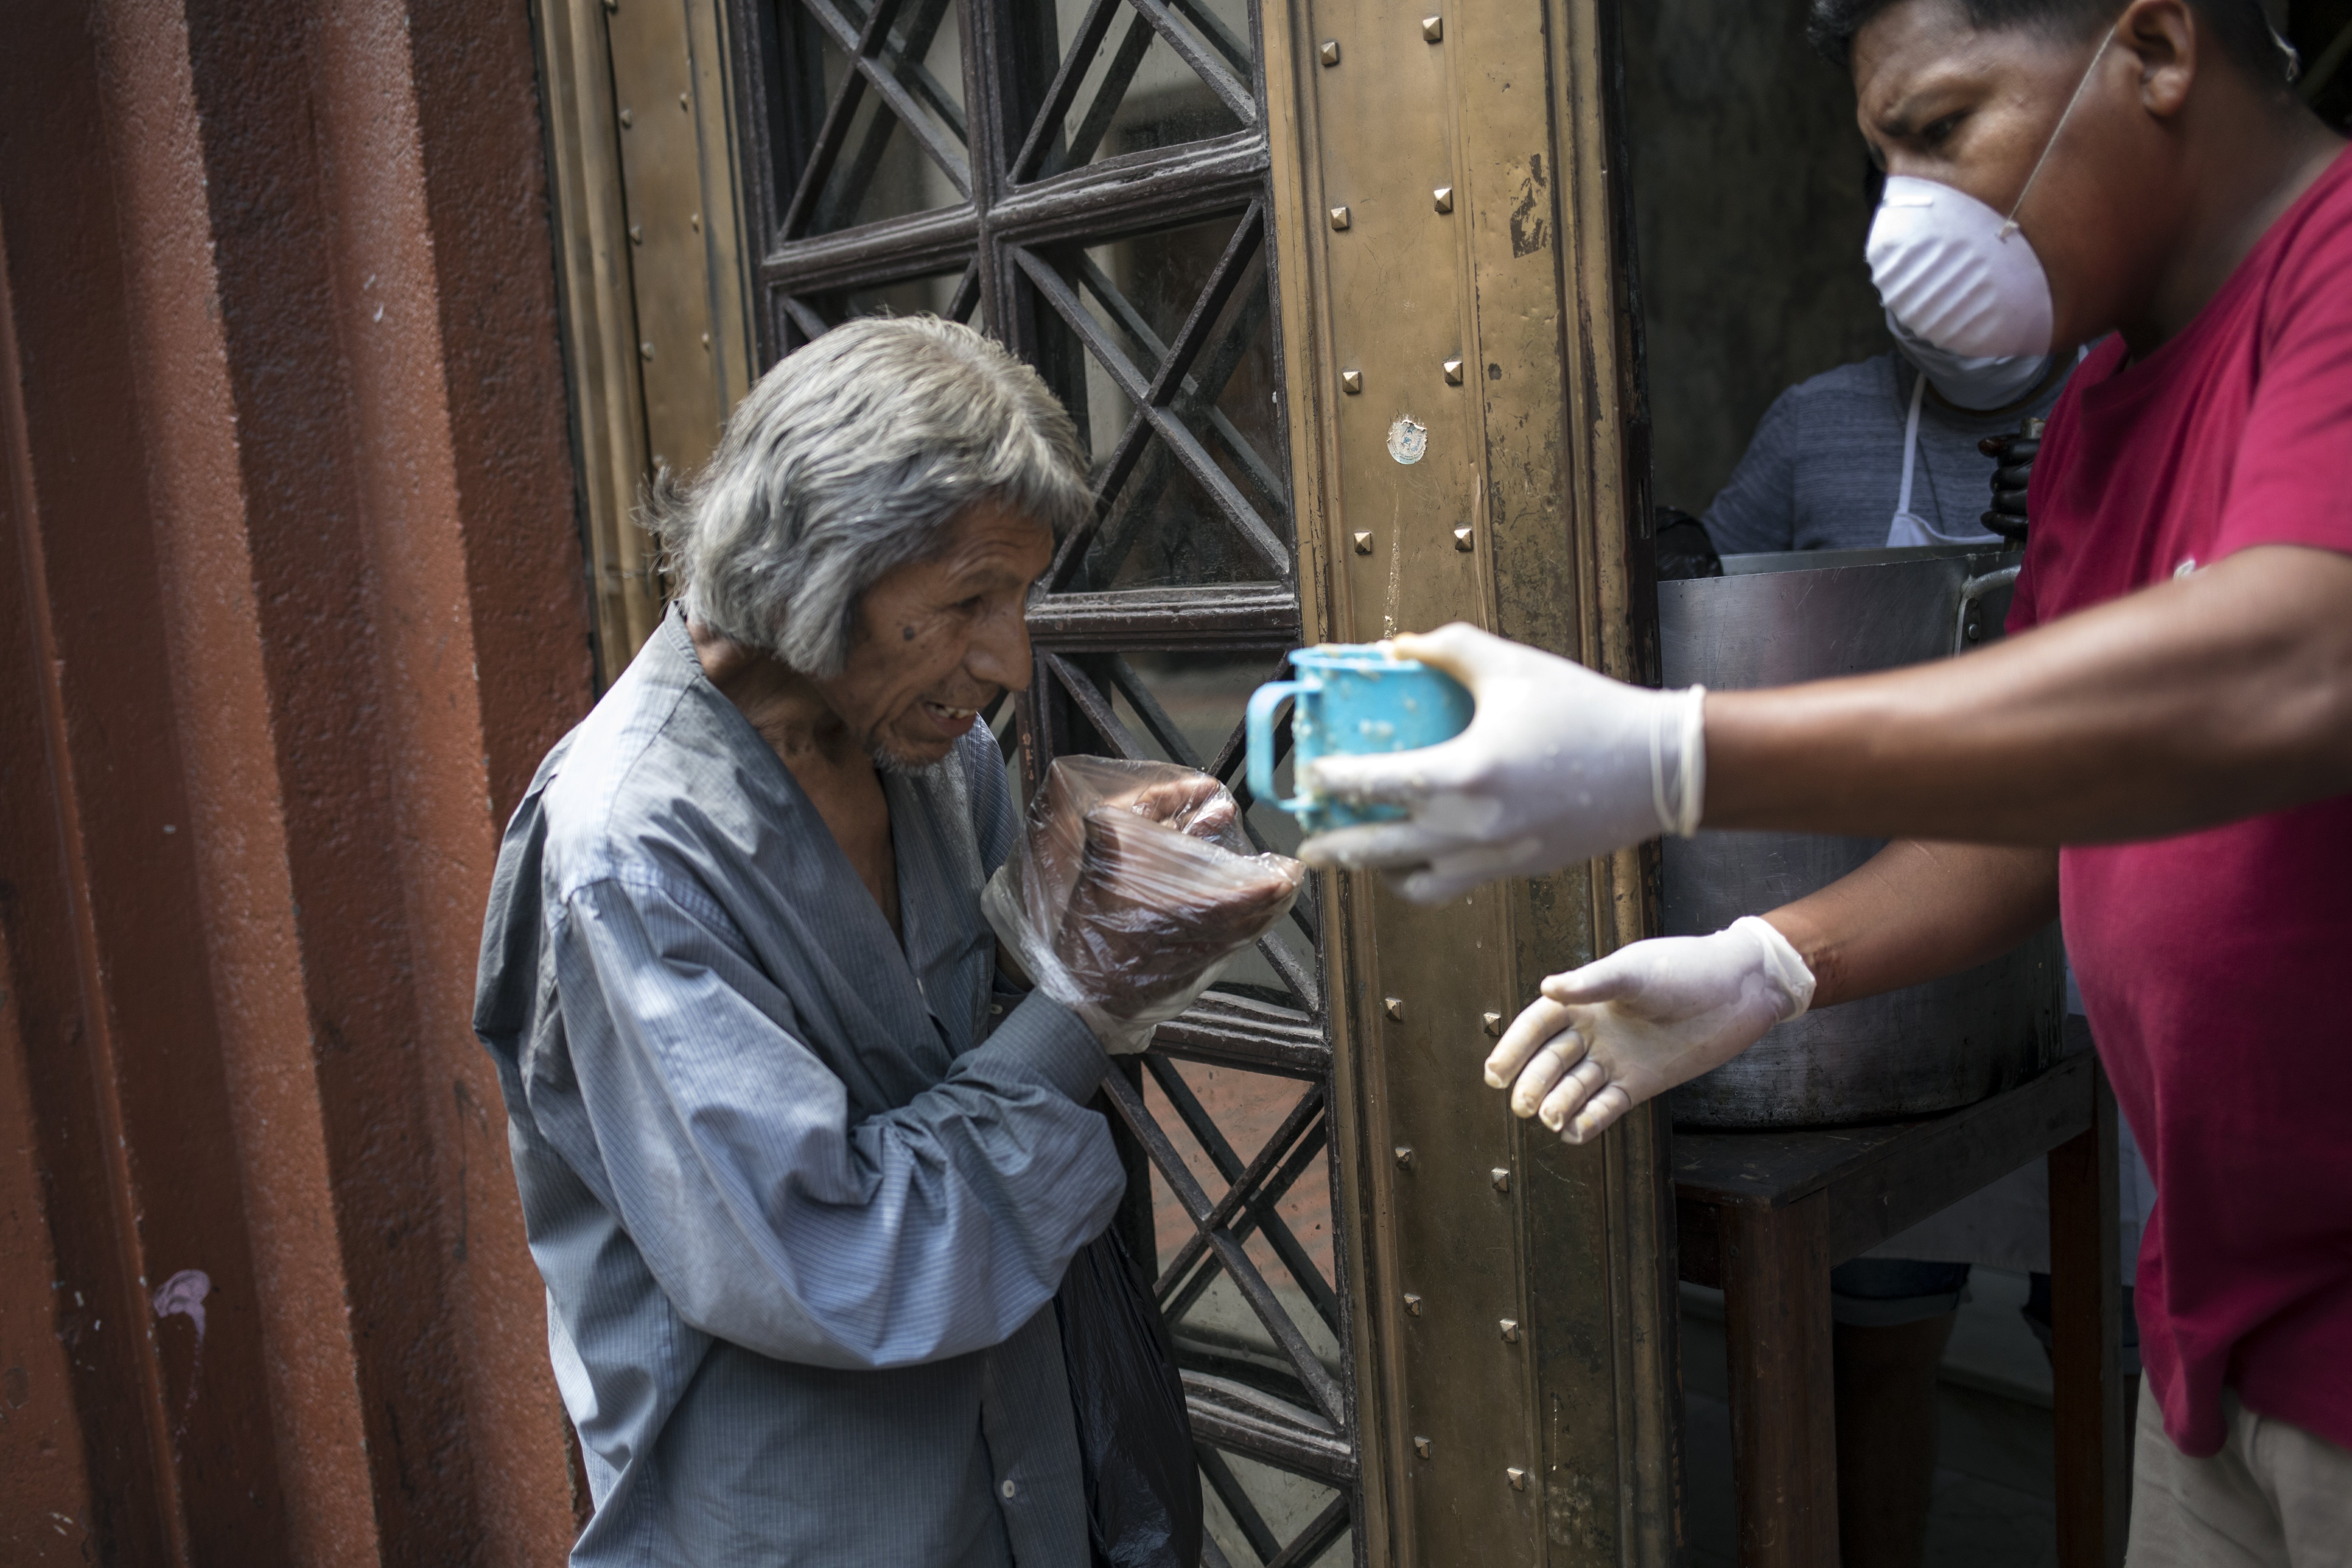 Un hombre utiliza bolsas de plástico como guantes desechables improvisados para tomar una taza de sopa gratis, en Lima, Perú, el jueves 26 de marzo de 2020, durante el confinamiento para frenar los contagios del nuevo coronavirus. (AP Foto/Rodrigo Abd)